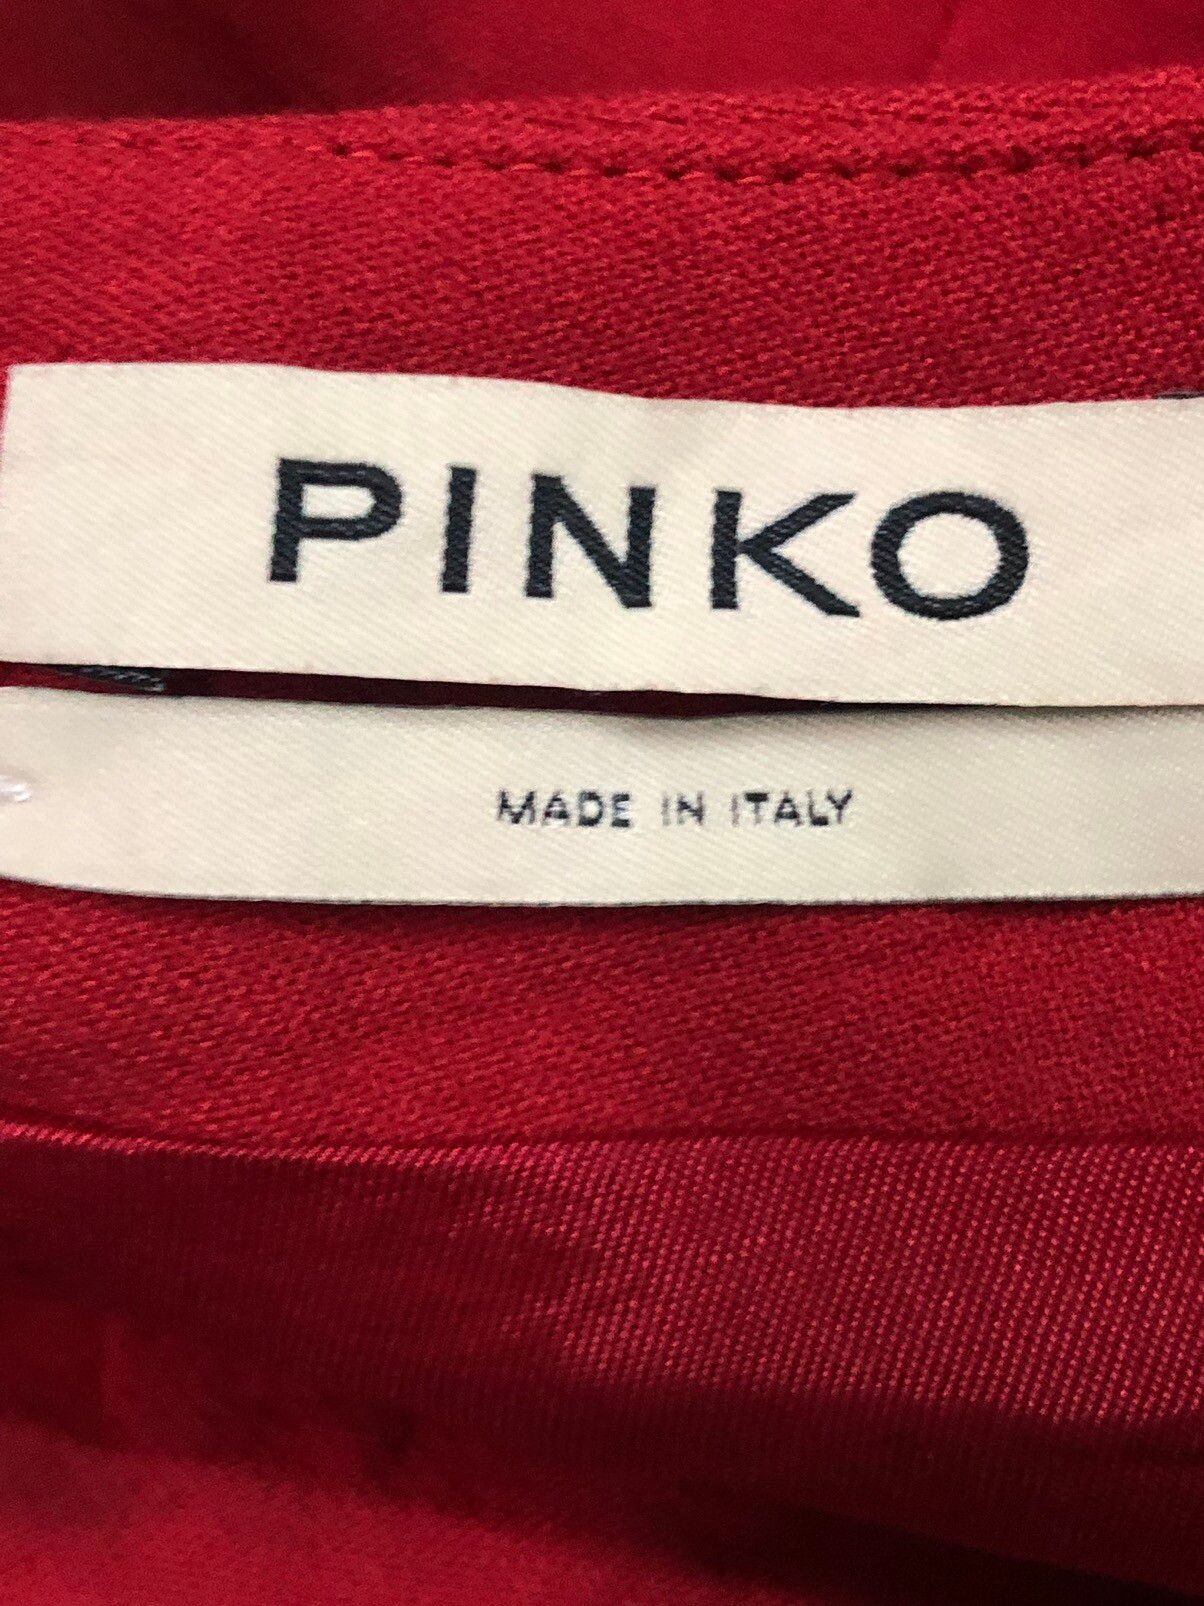 Italian Designers - Pinko by Pietro Negra Mini Skirt - 5